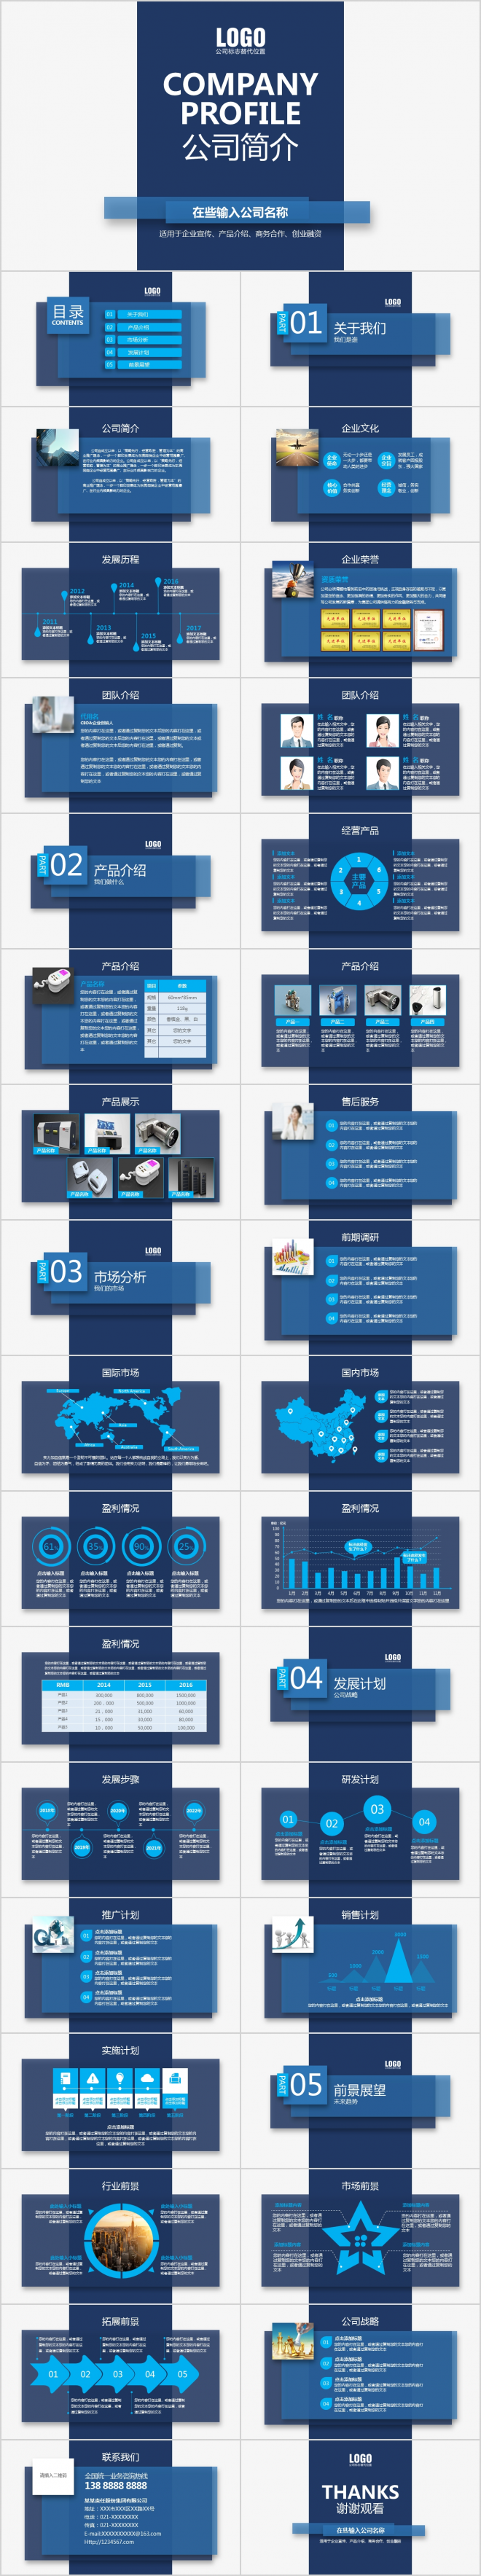 蓝色科技简约大气公司简介公司介绍产品介绍画册PPT模板